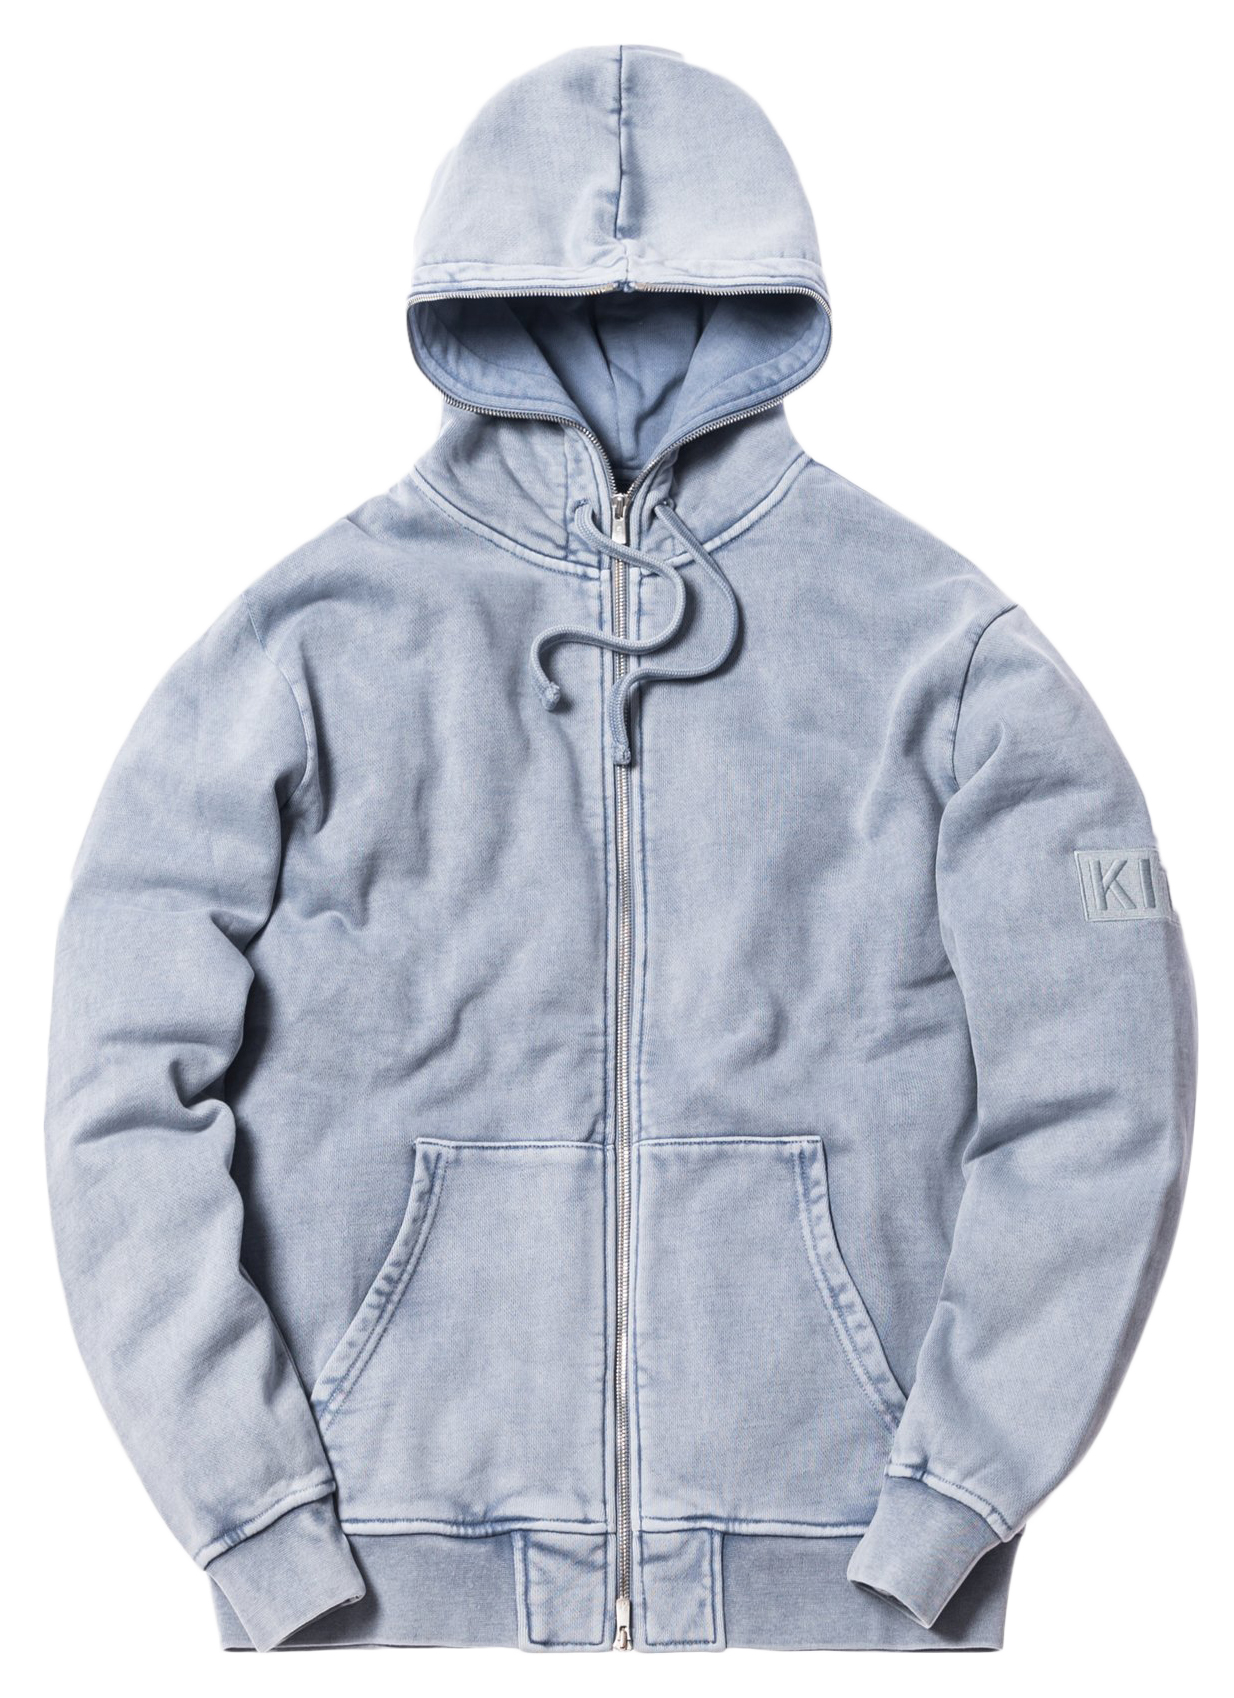 Indigo zip-up hoodie